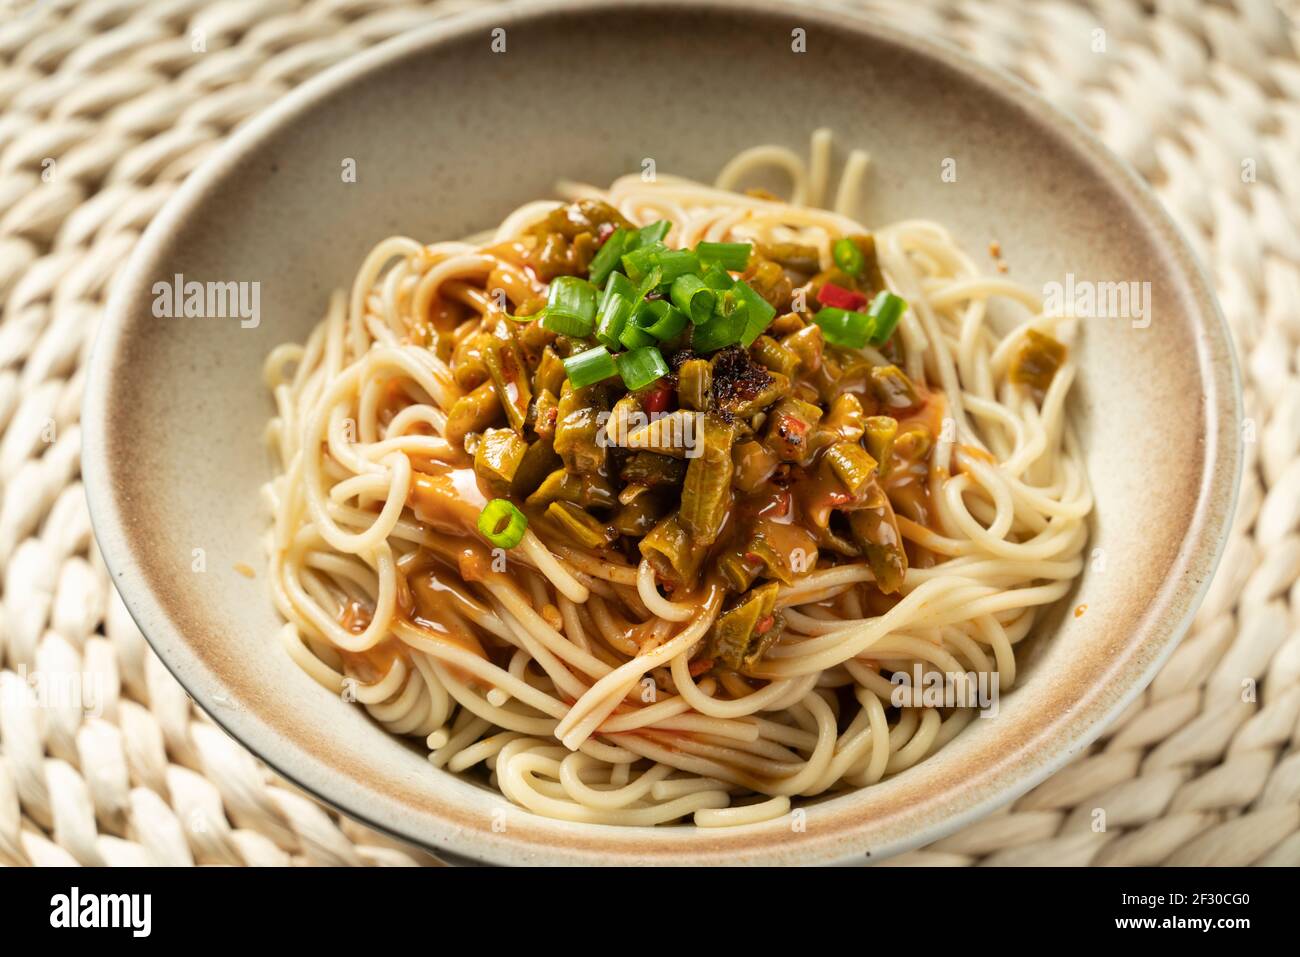 Eine köstliche Schüssel mit Wuhan heißen und trockenen Nudeln Stockfoto